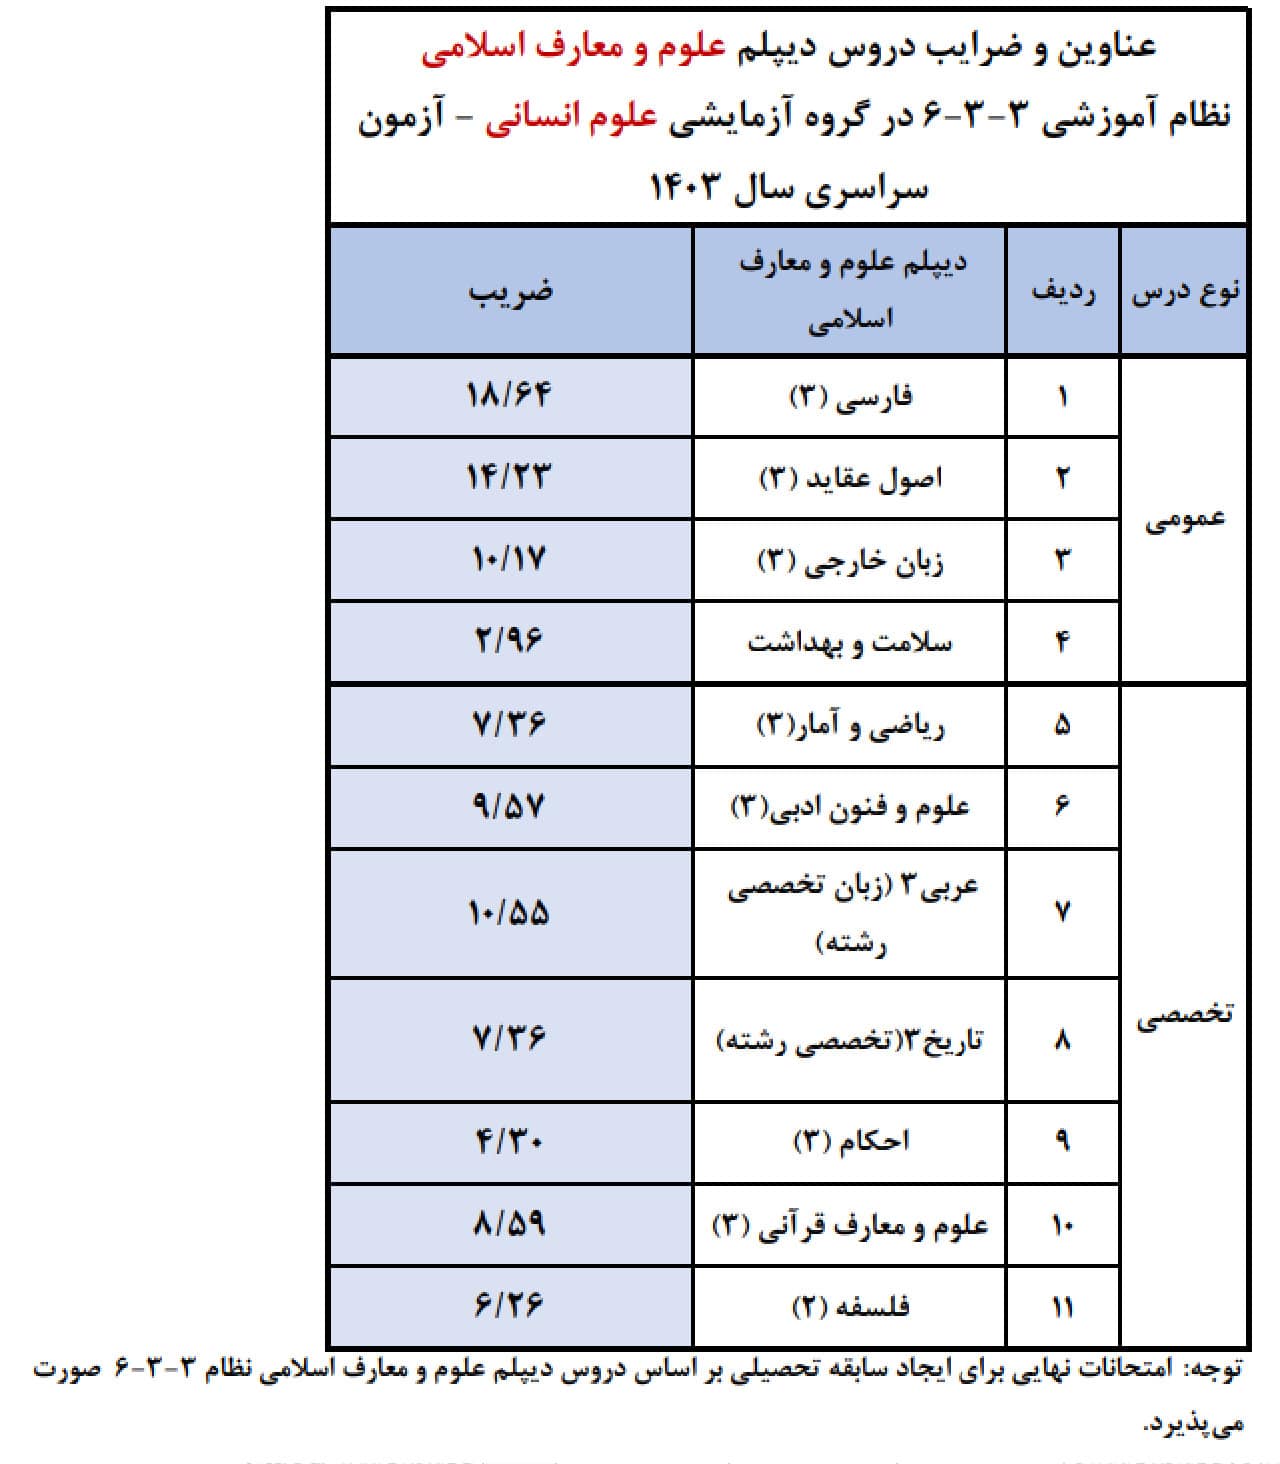 دروس دیپلم علوم و معارف اسلامی نظام آموزشی۳-۳-۶ در گروه آزمایشی علوم انسانی - آزمون سراسری ۱۴۰۳